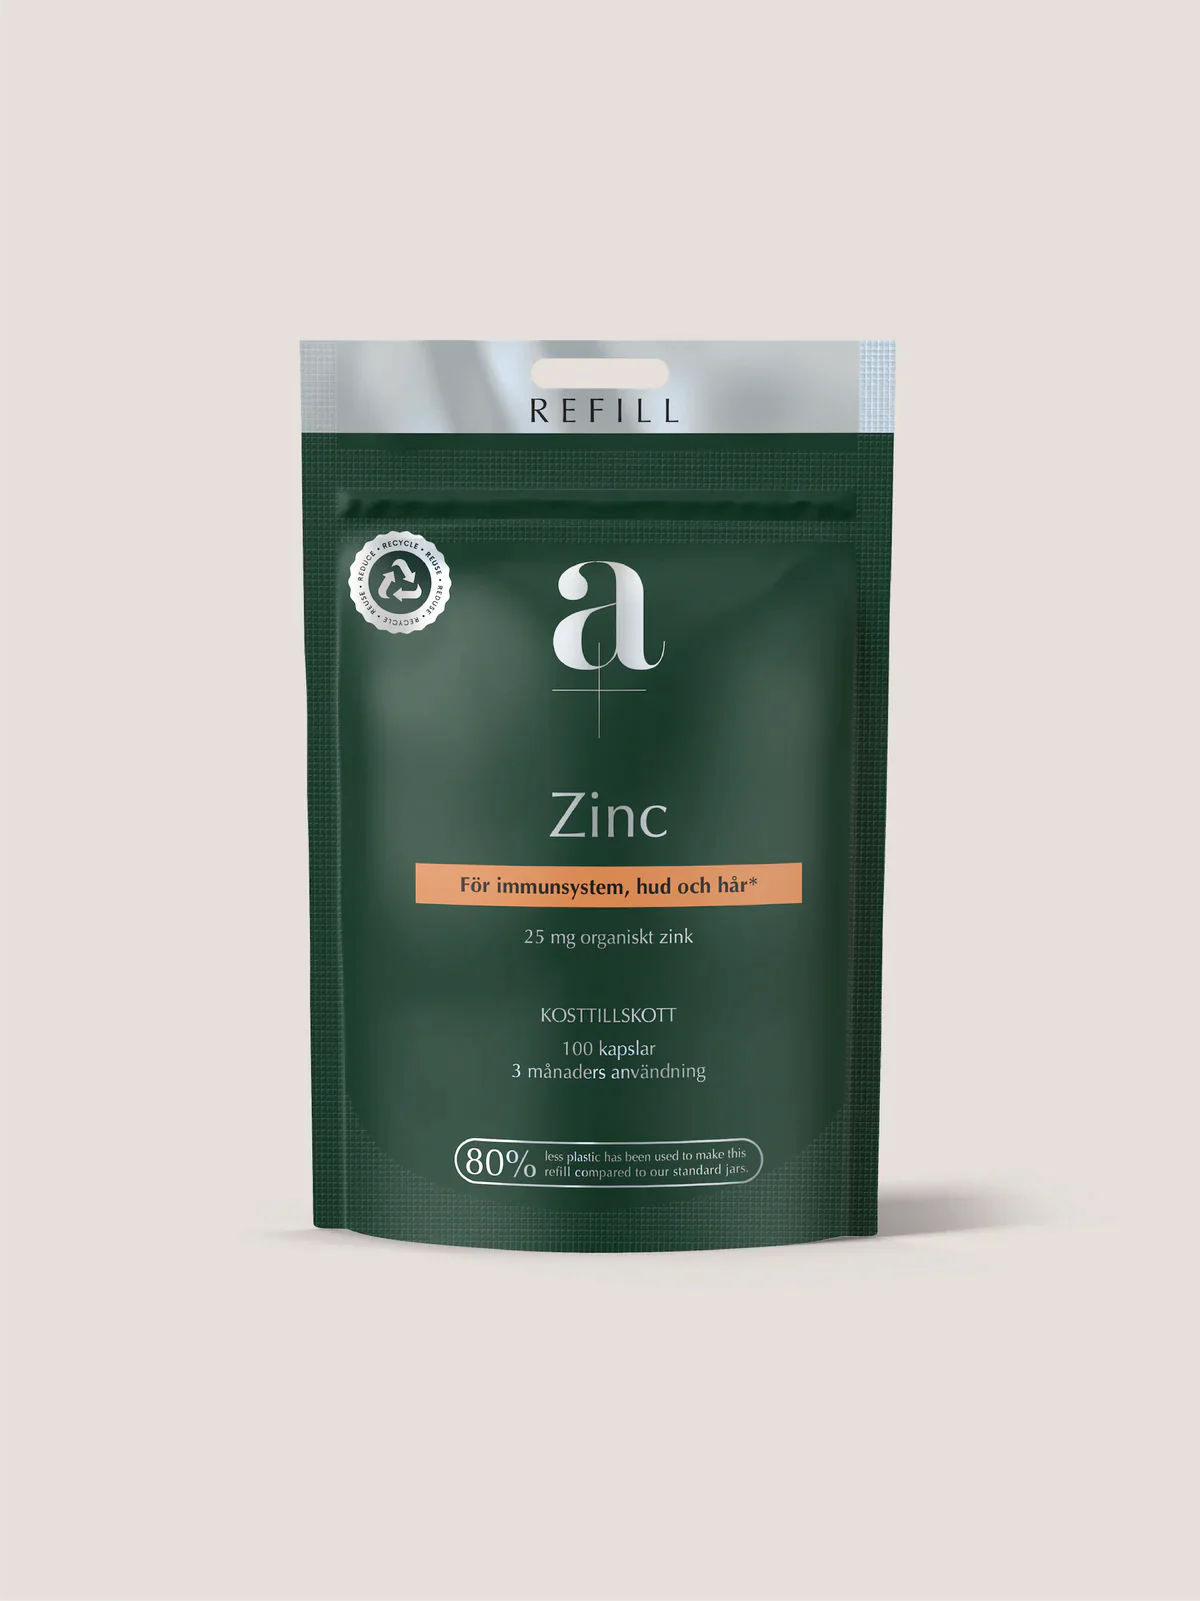 » A+ Zinc Refill (100% off)